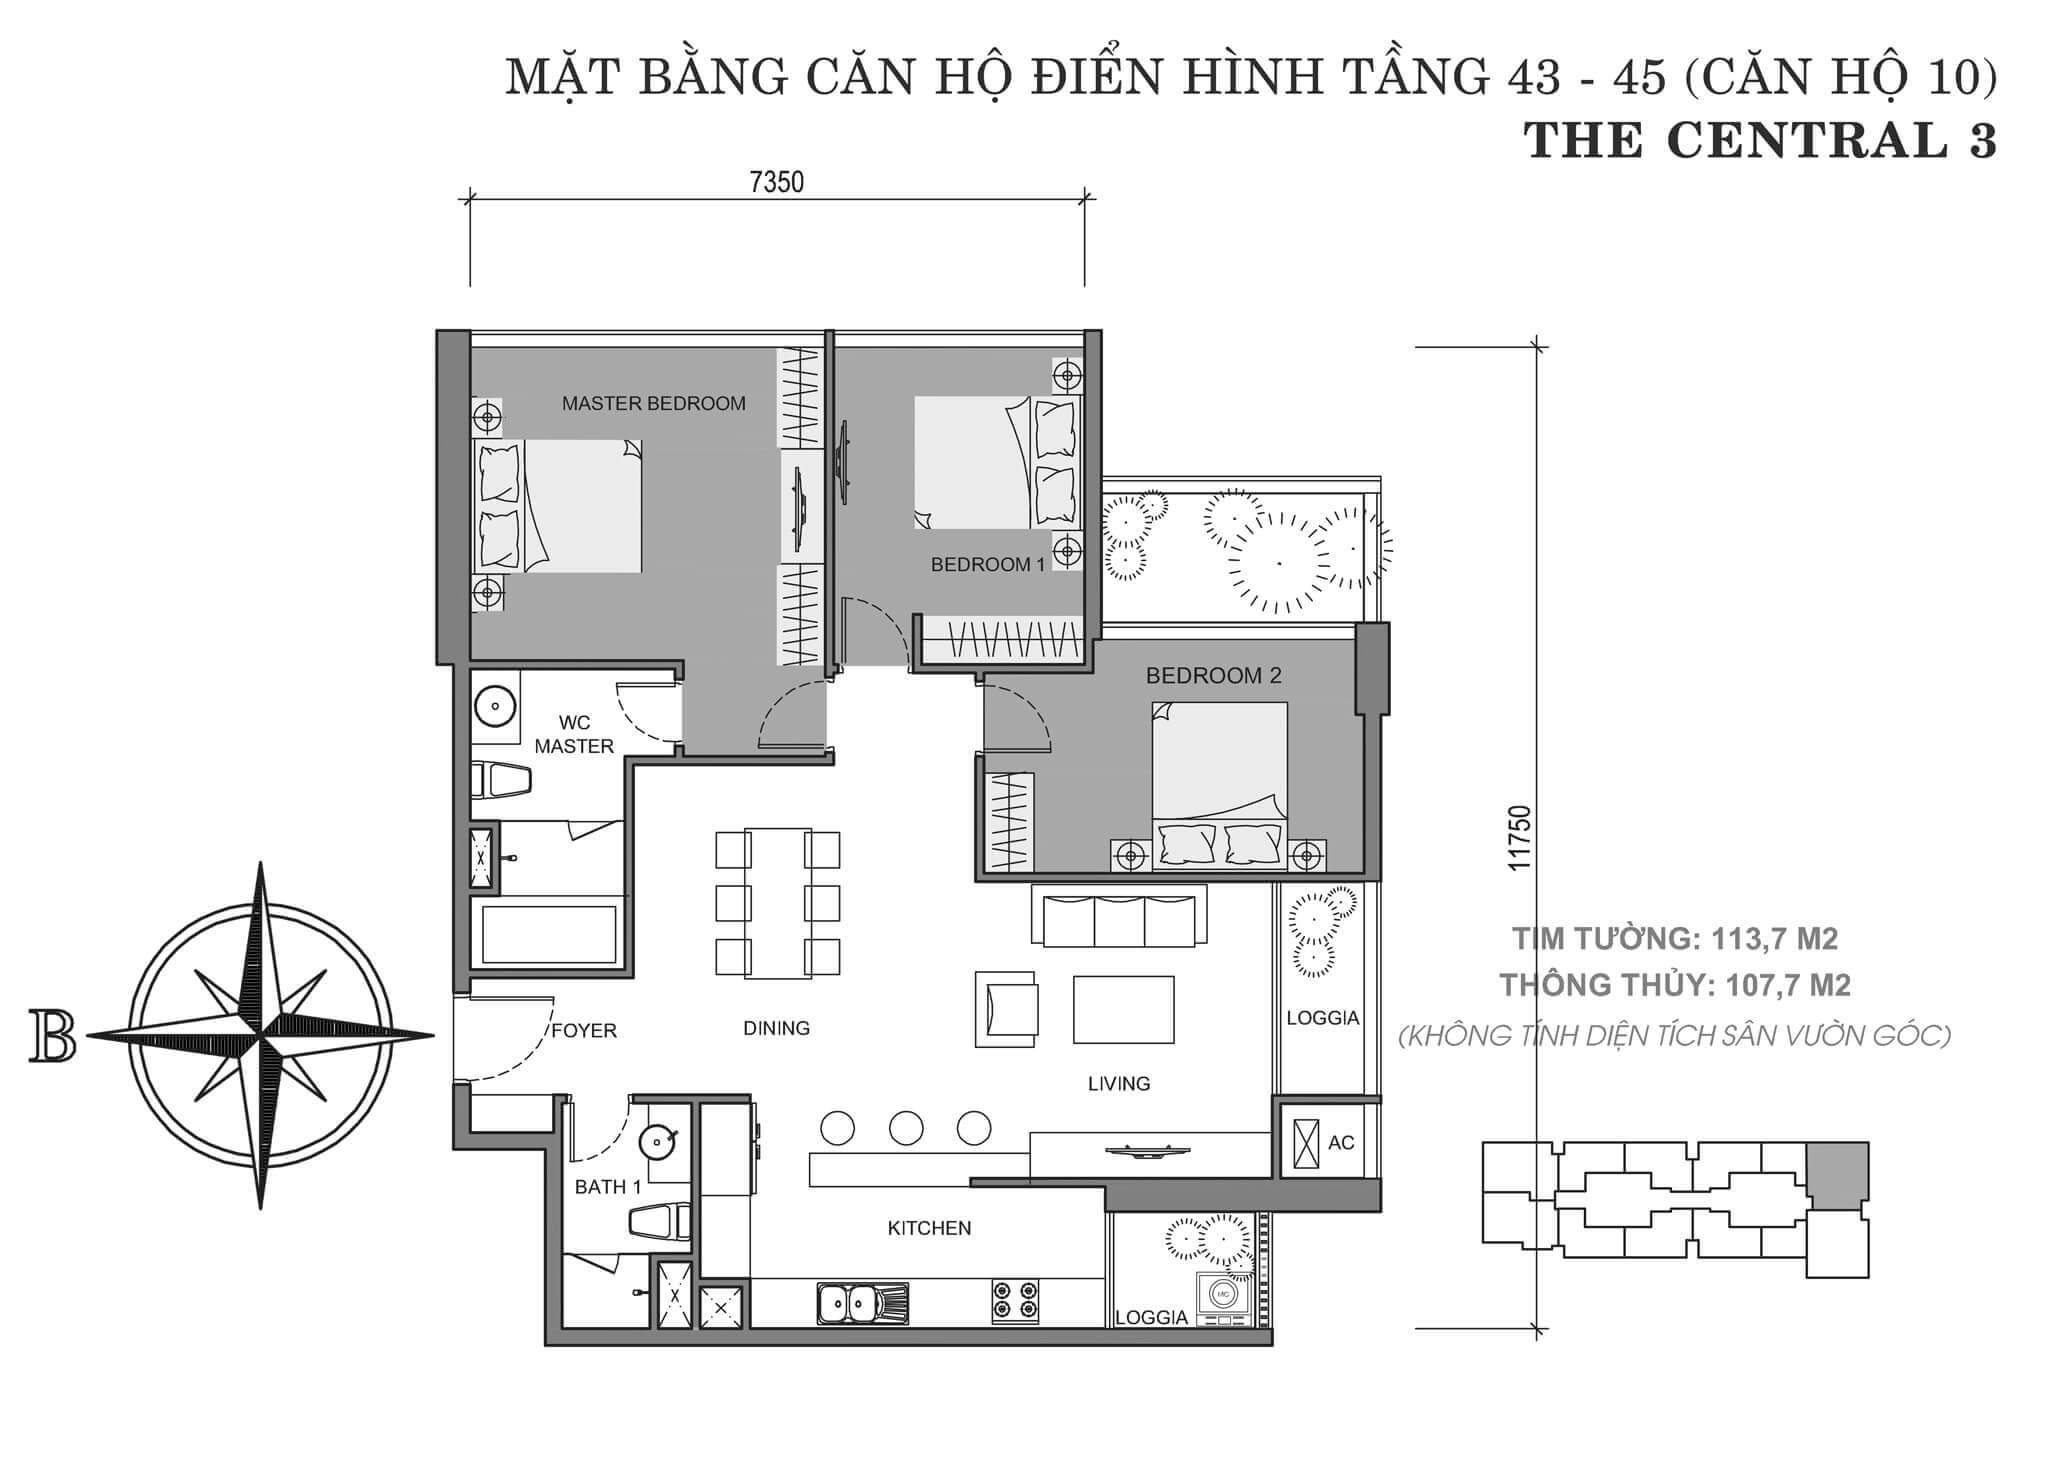 layout căn hộ số 10 tòa Central 3 tầng 43-45